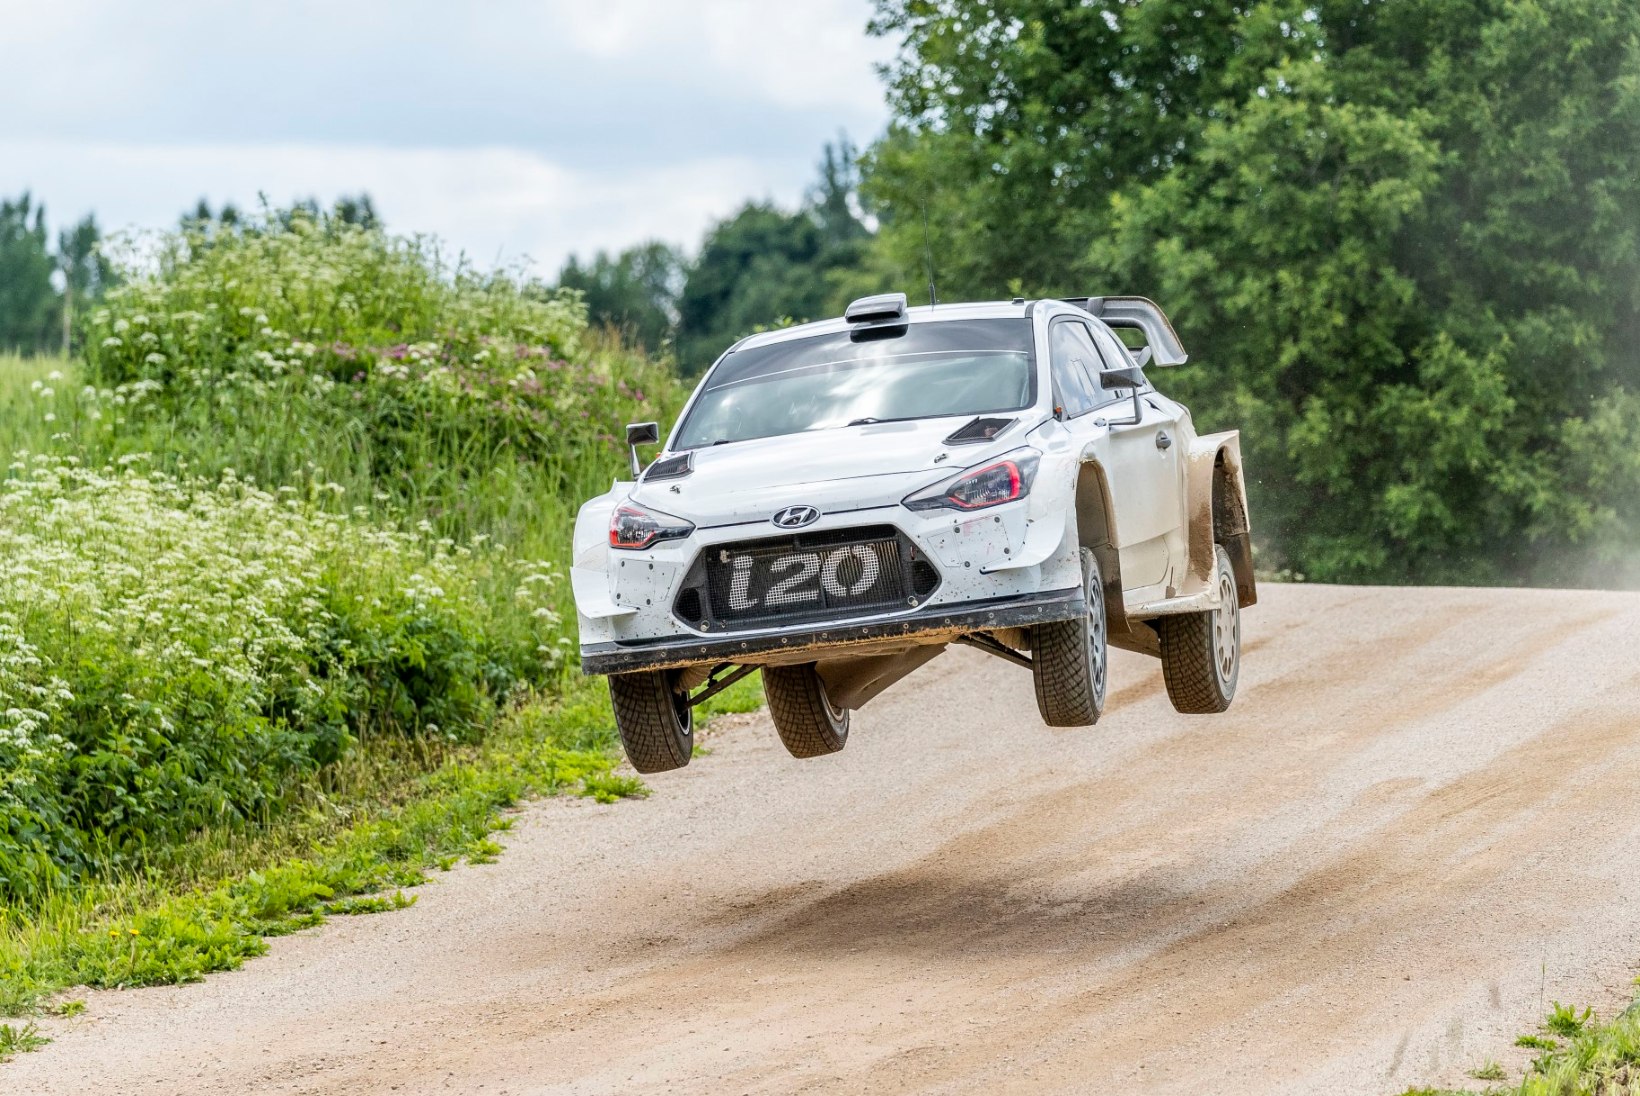 FOTOD | Hyundai rallimeeskond tegi Lõuna-Eestis tõsise testipäeva